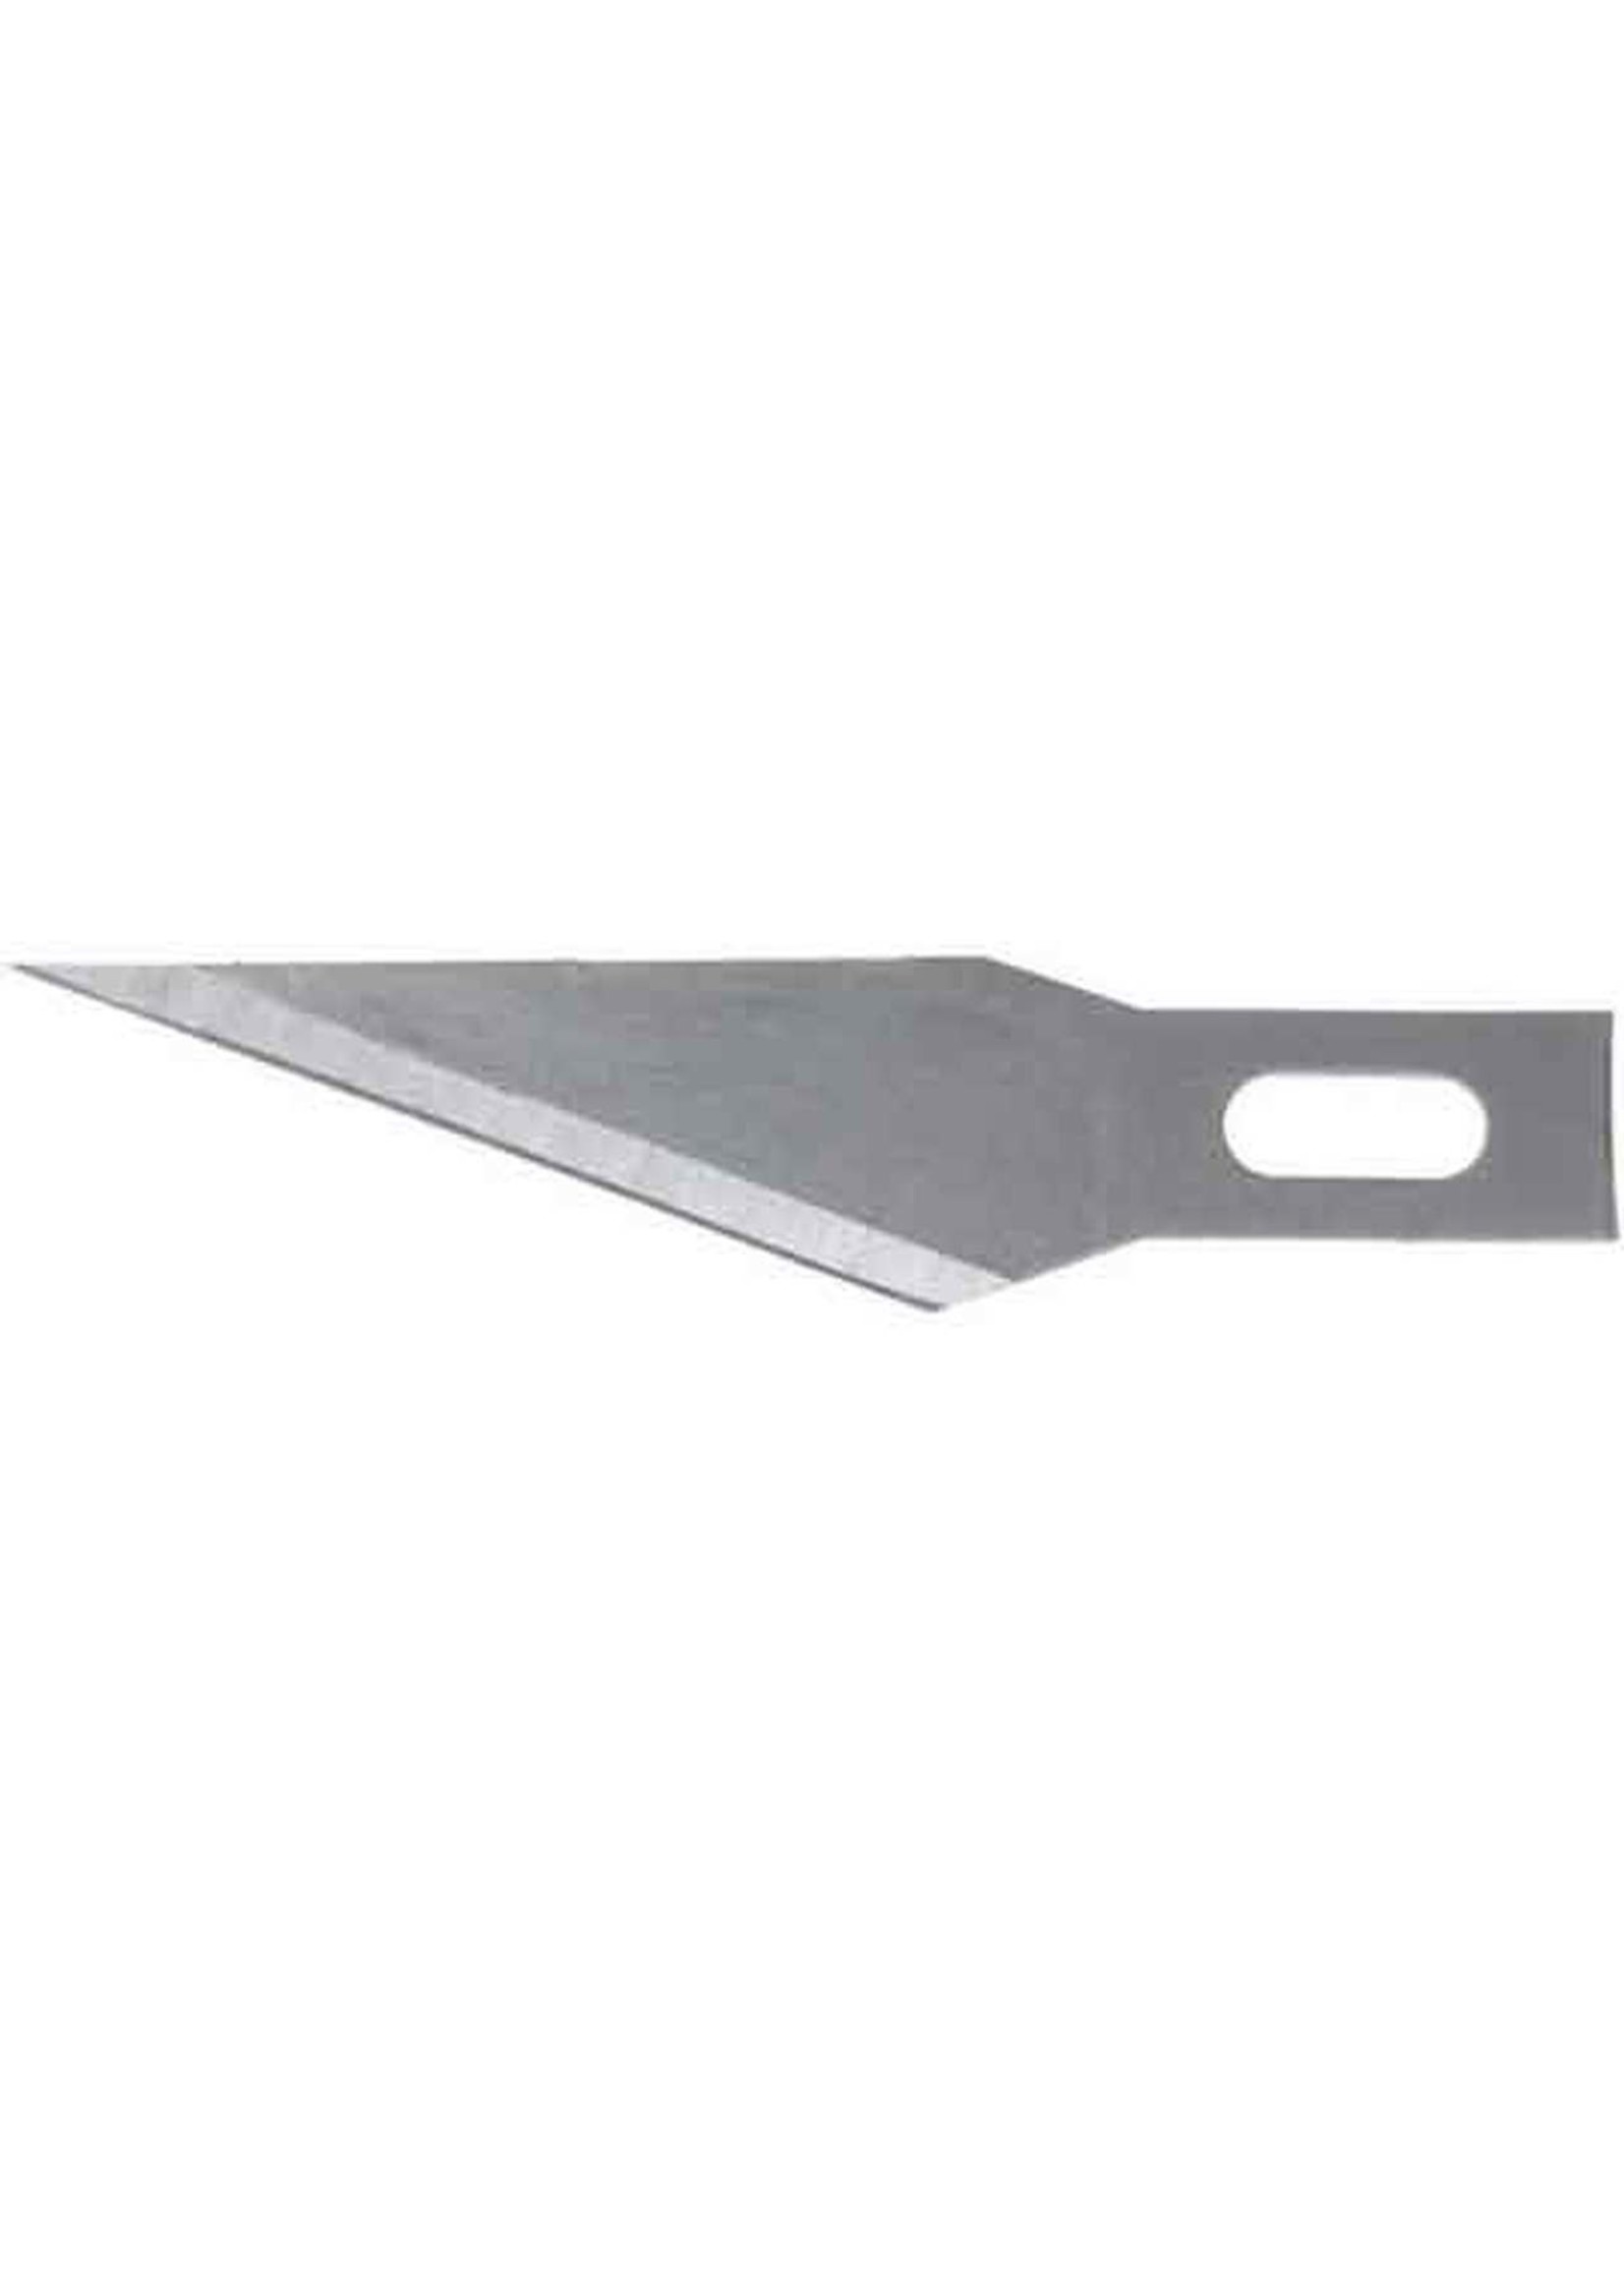 11 HOBBY KNIFE - Modern Hardware